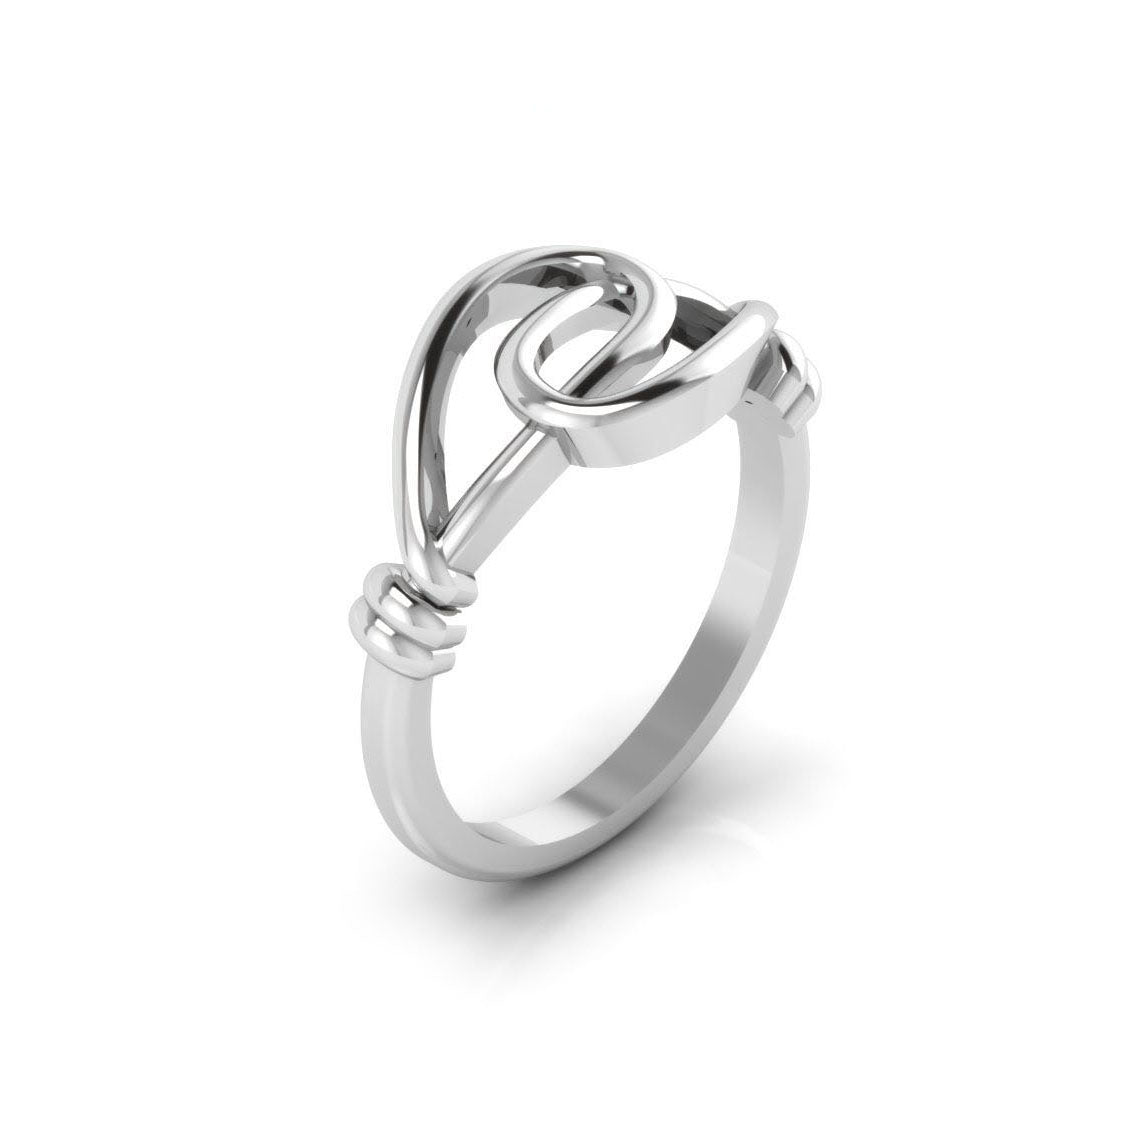 TRISHTY® Pure Platinum Studded Ring For Women's & Girl's